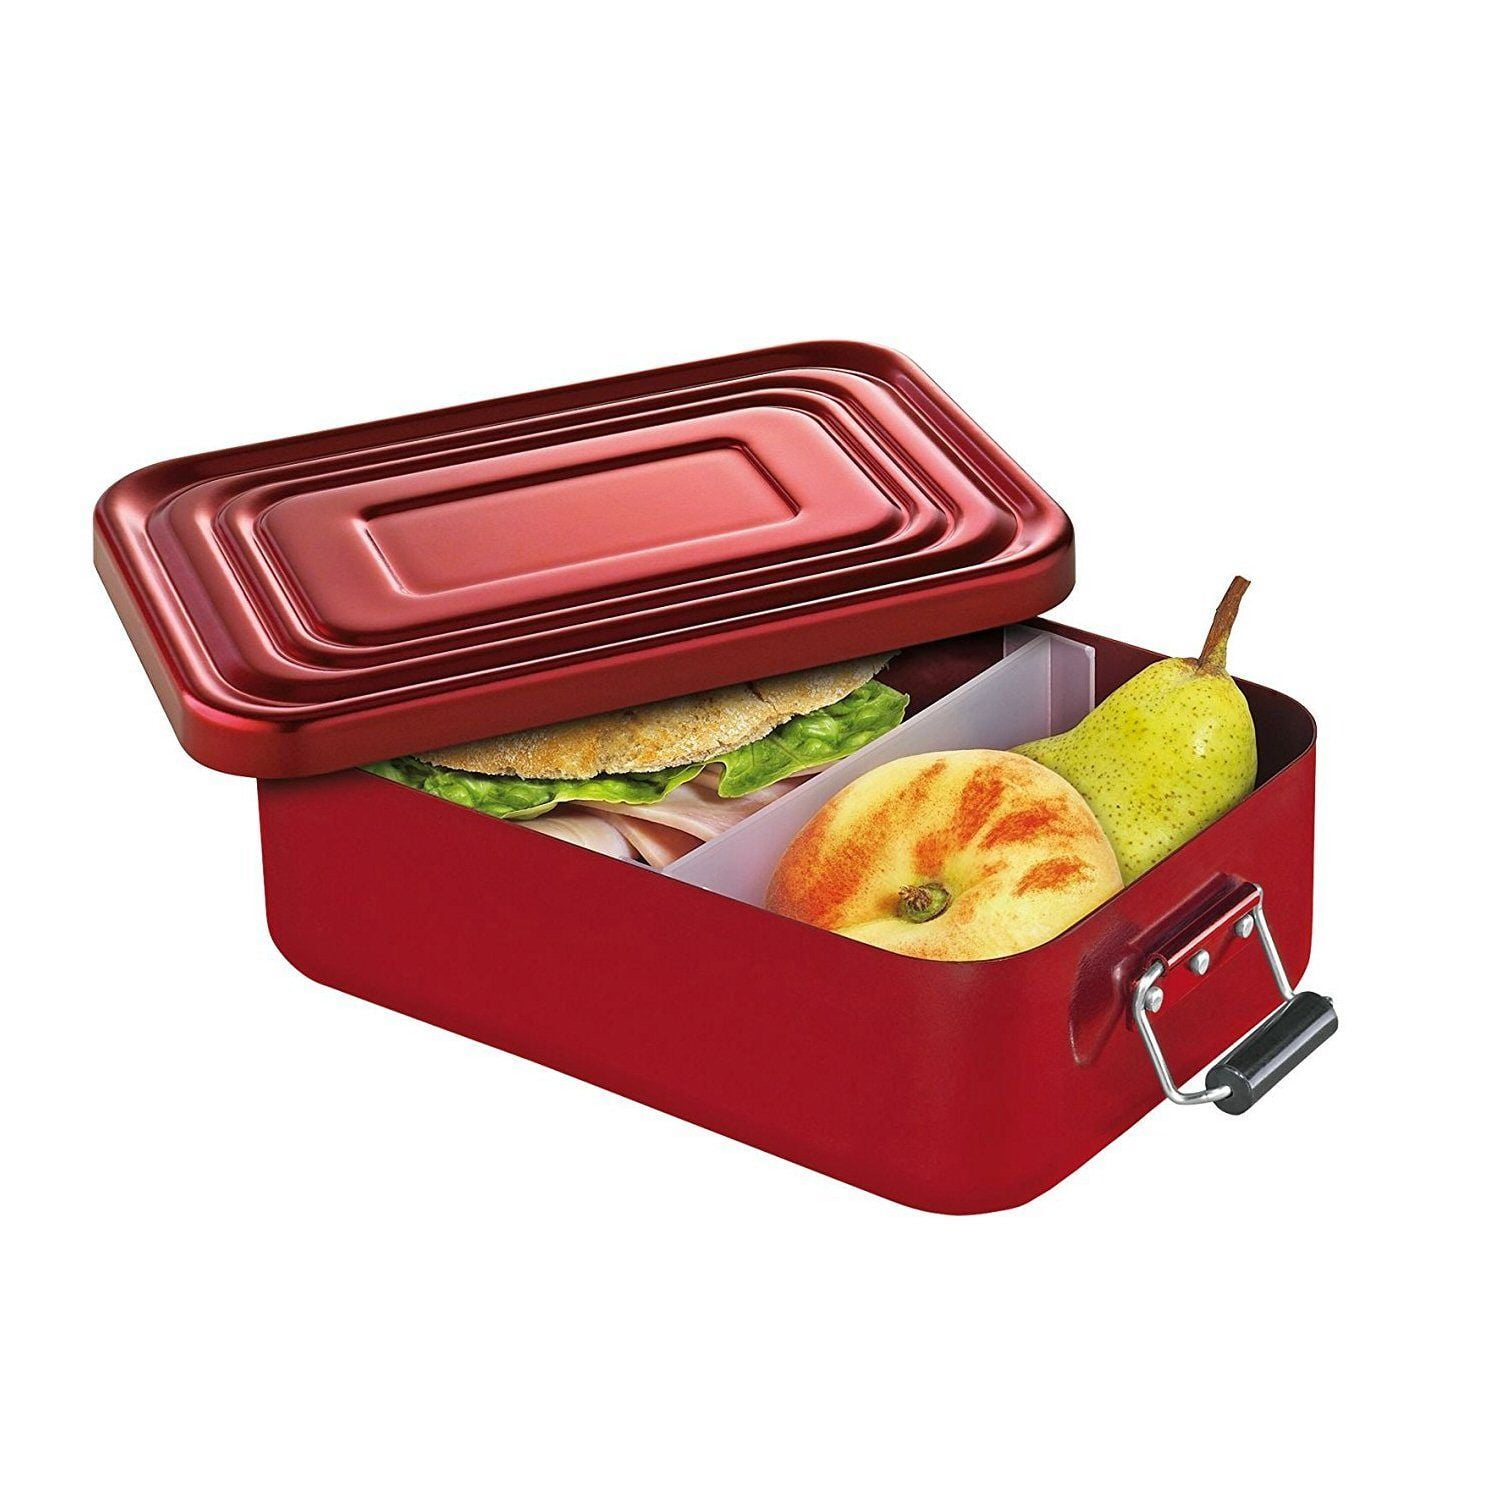 ROSVUSTE Aluminum lunch box